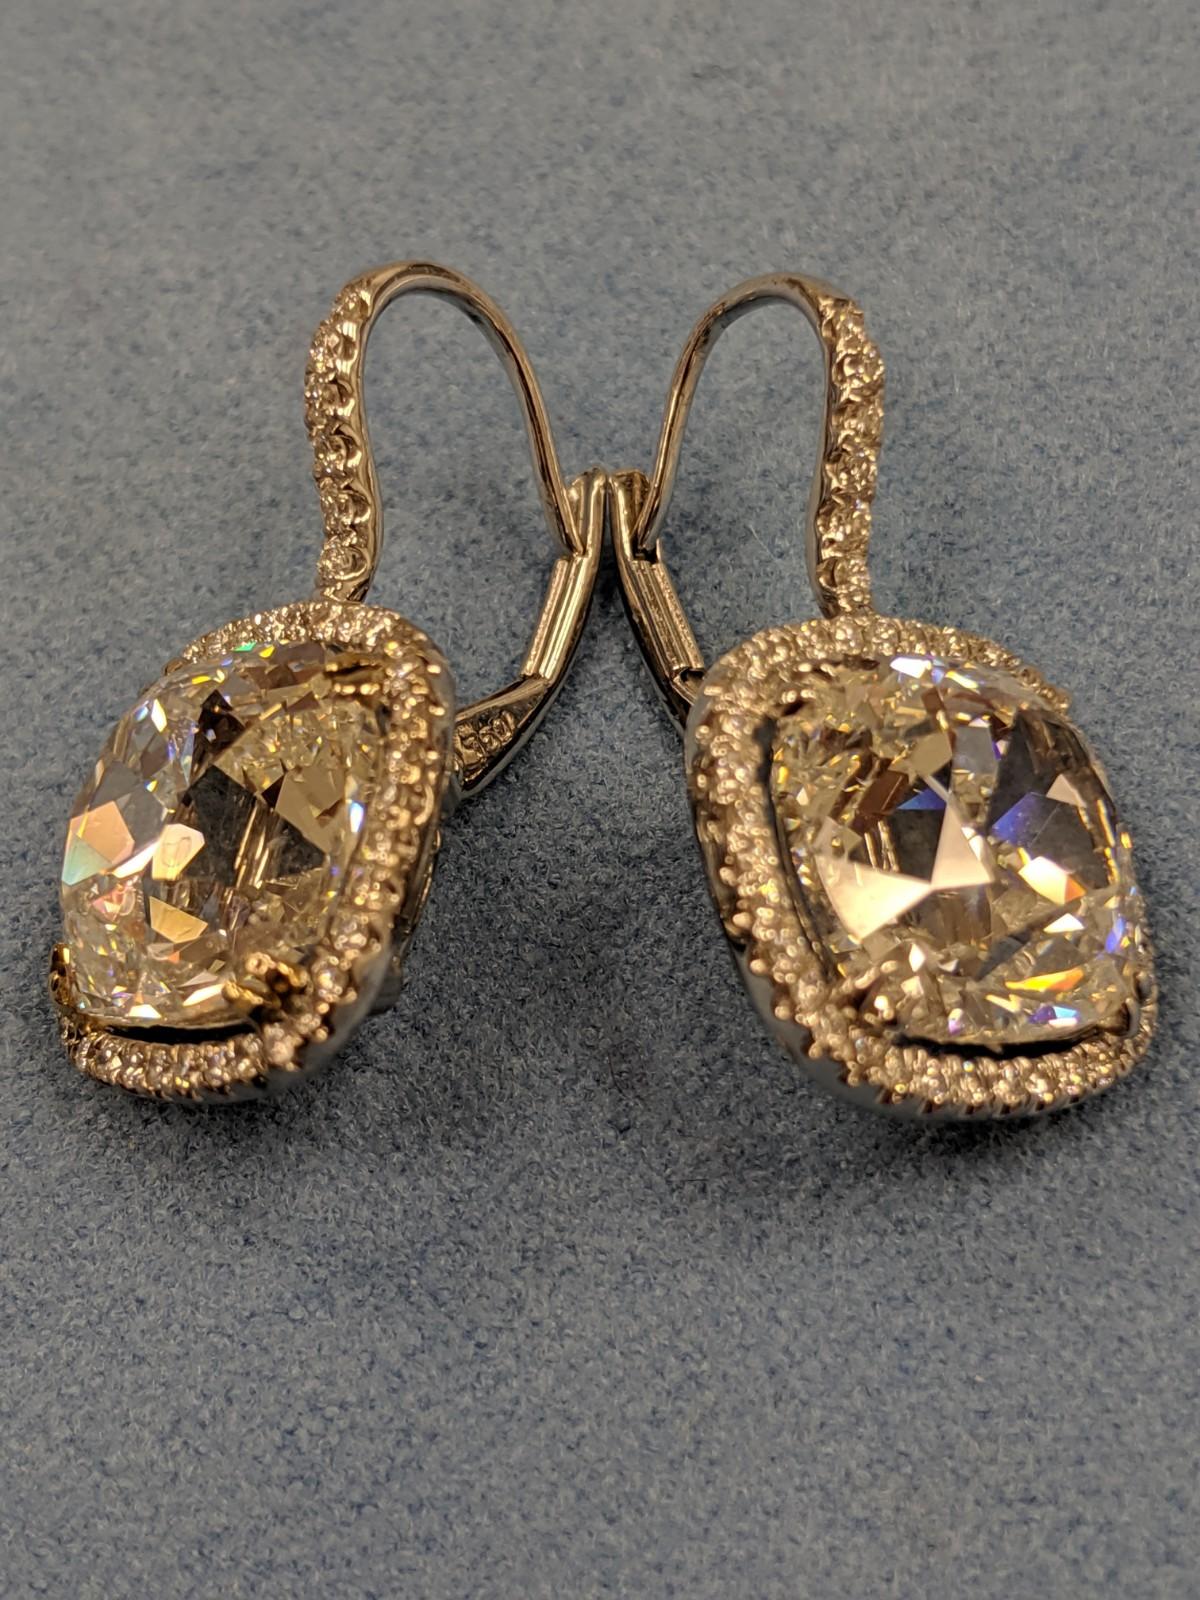 1/10 carat diamond earrings size